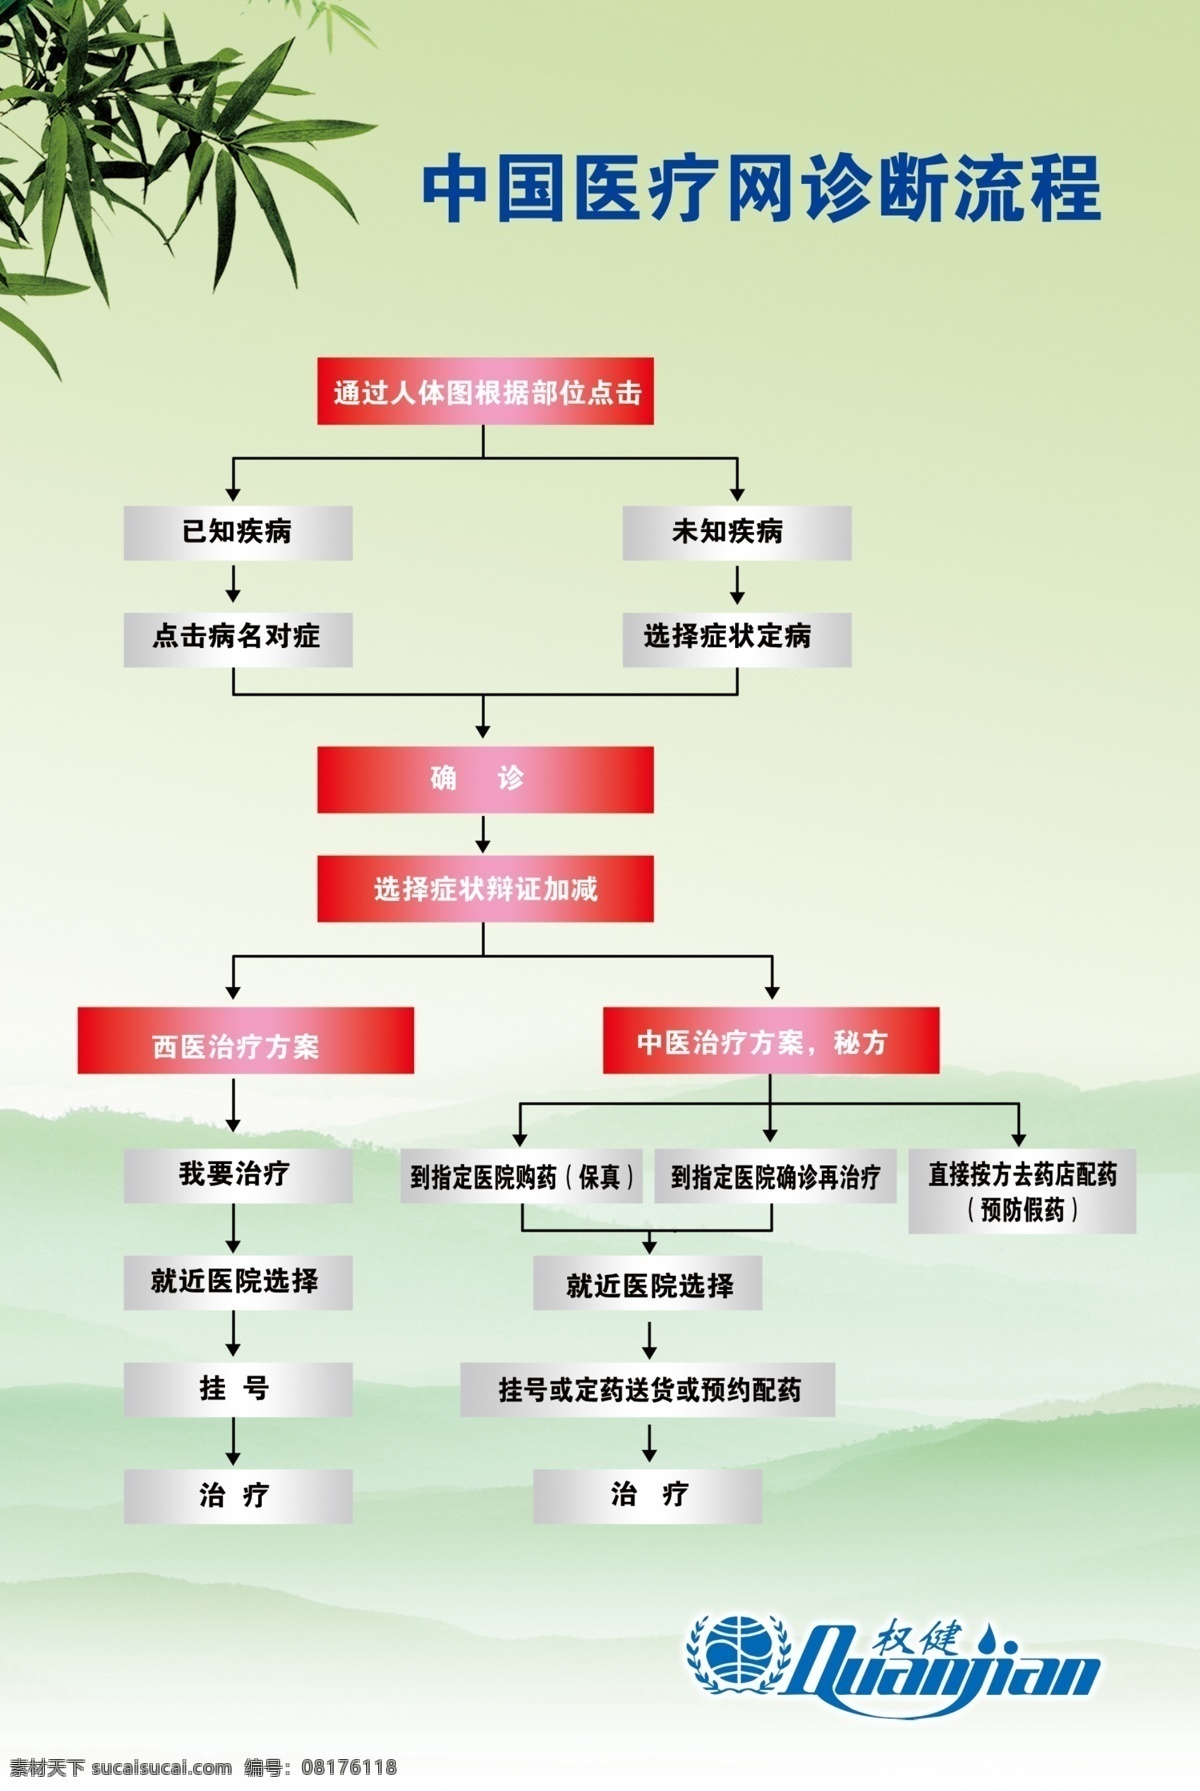 中国 医疗网 诊断 流程 权健 火疗 中国医疗网 诊断流程 分层